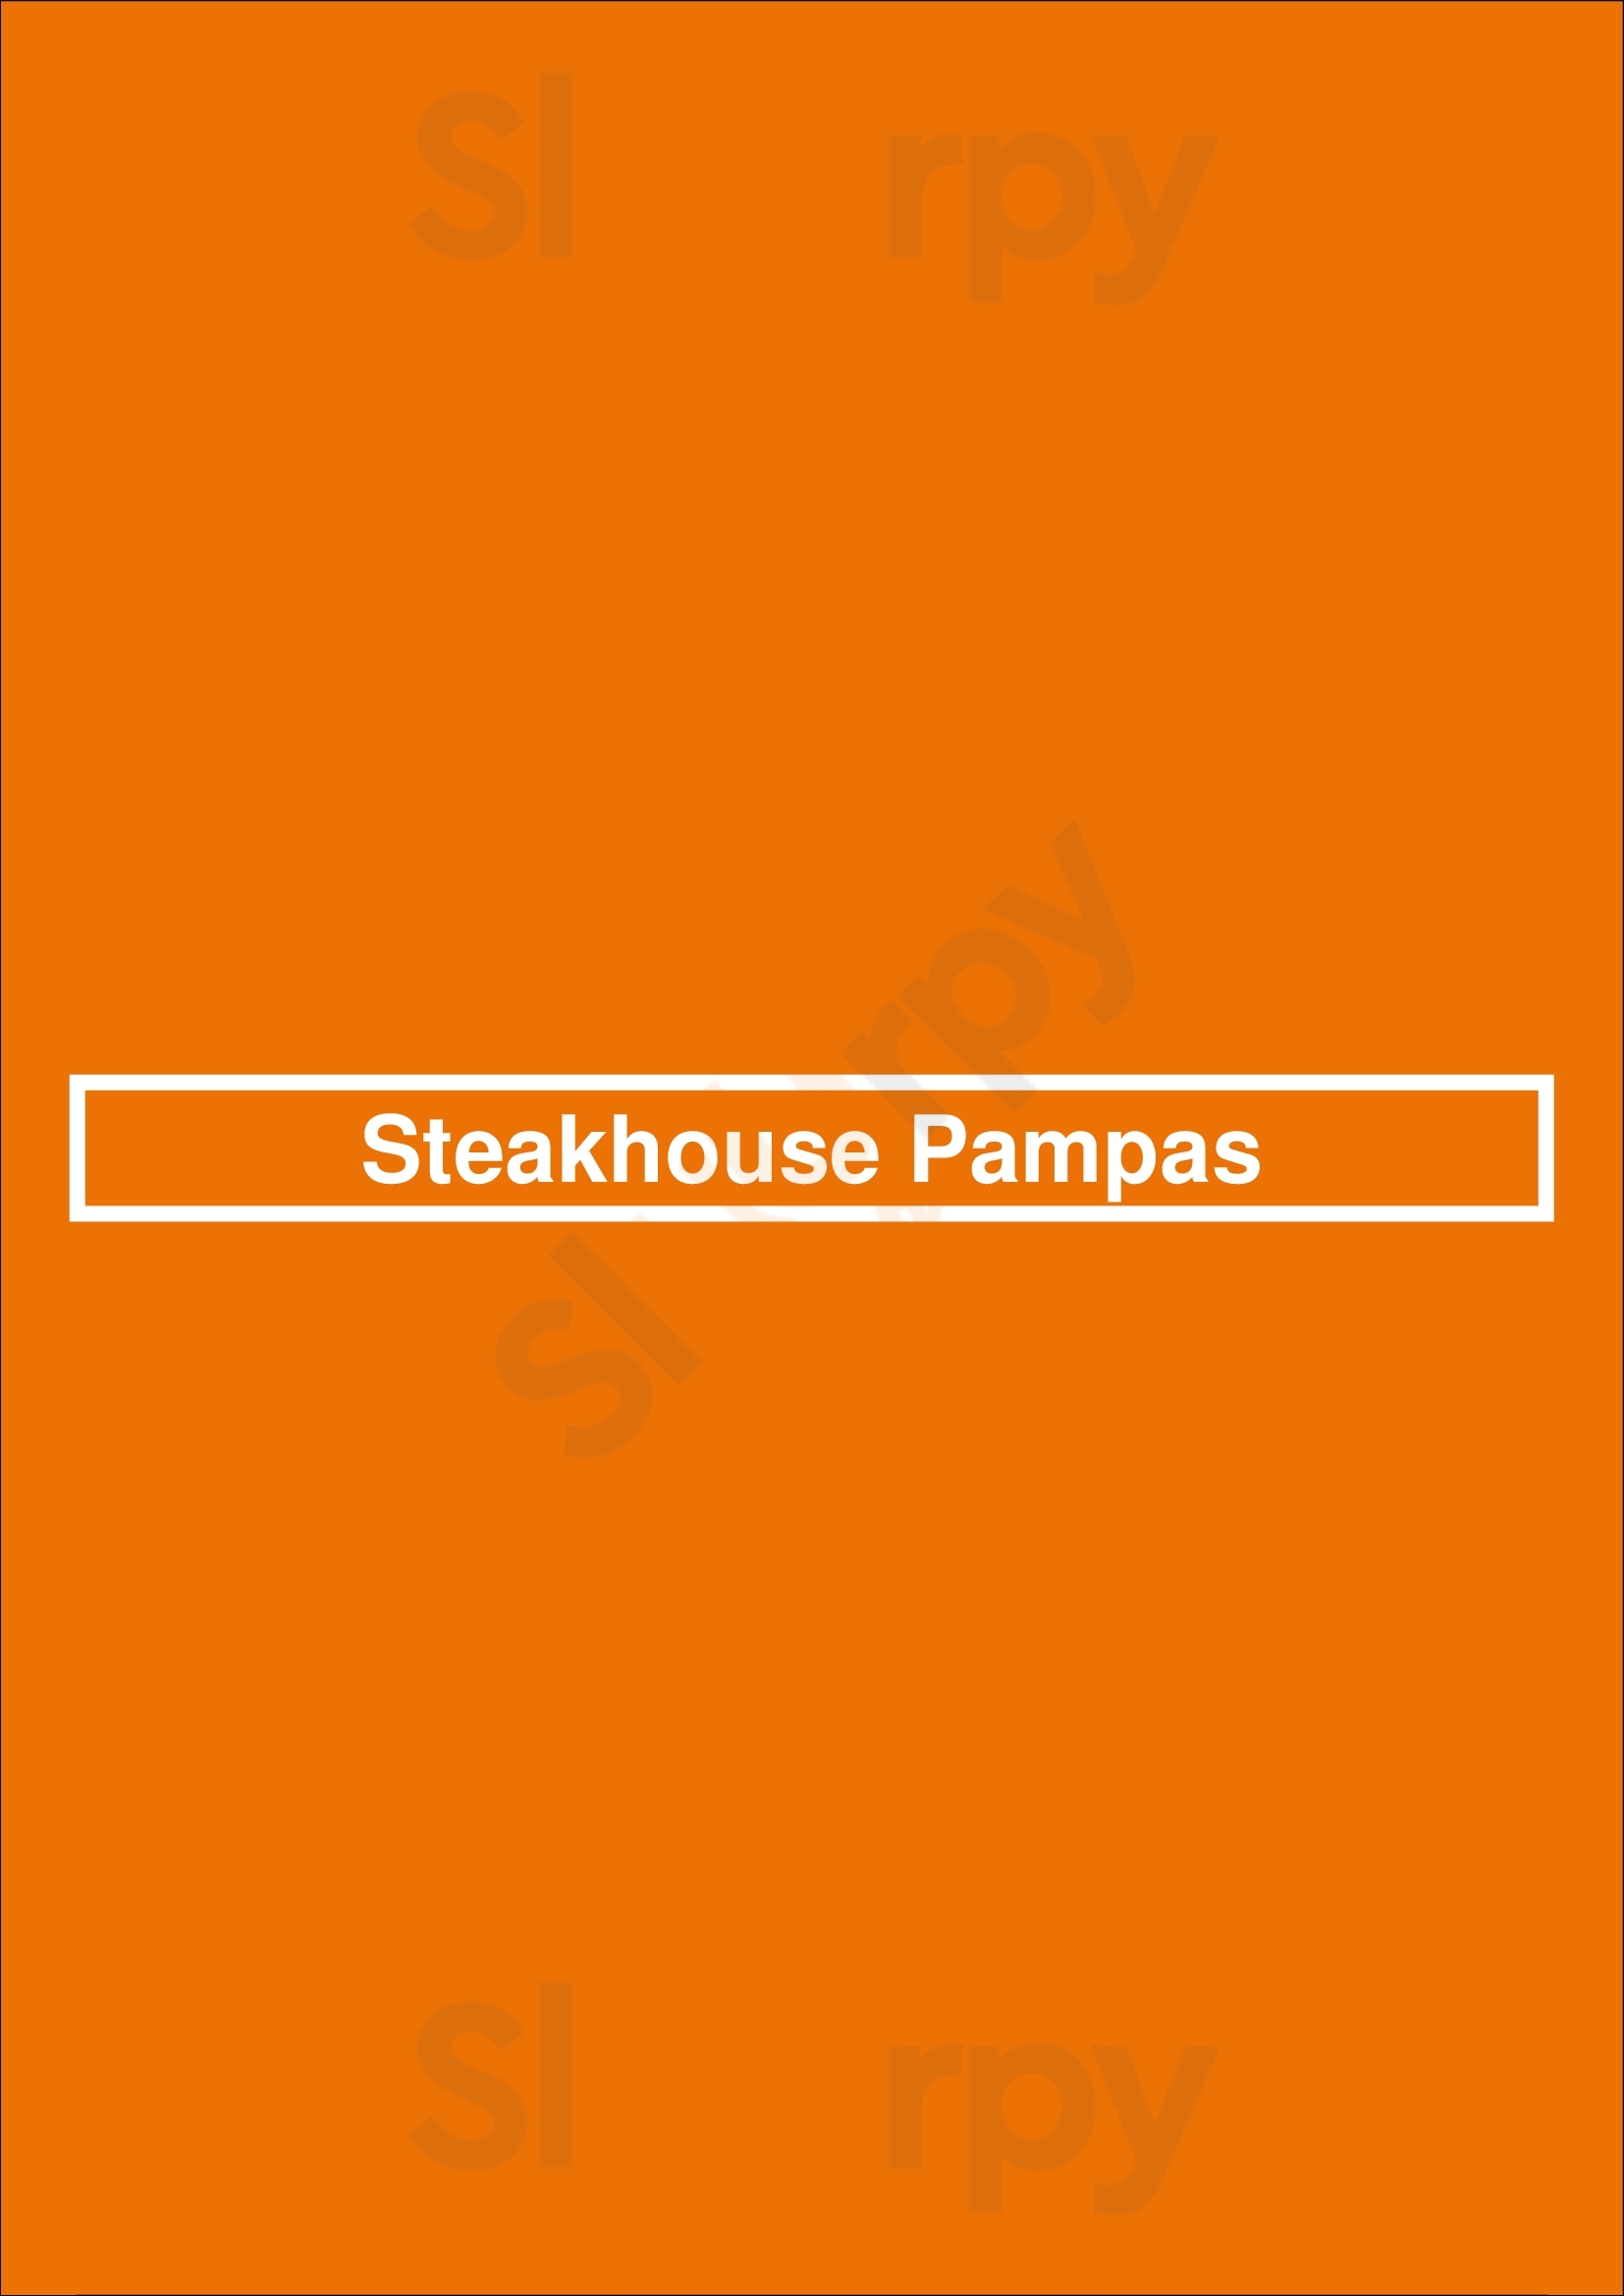 Steakhouse Pampas Krimpen aan den IJssel Menu - 1